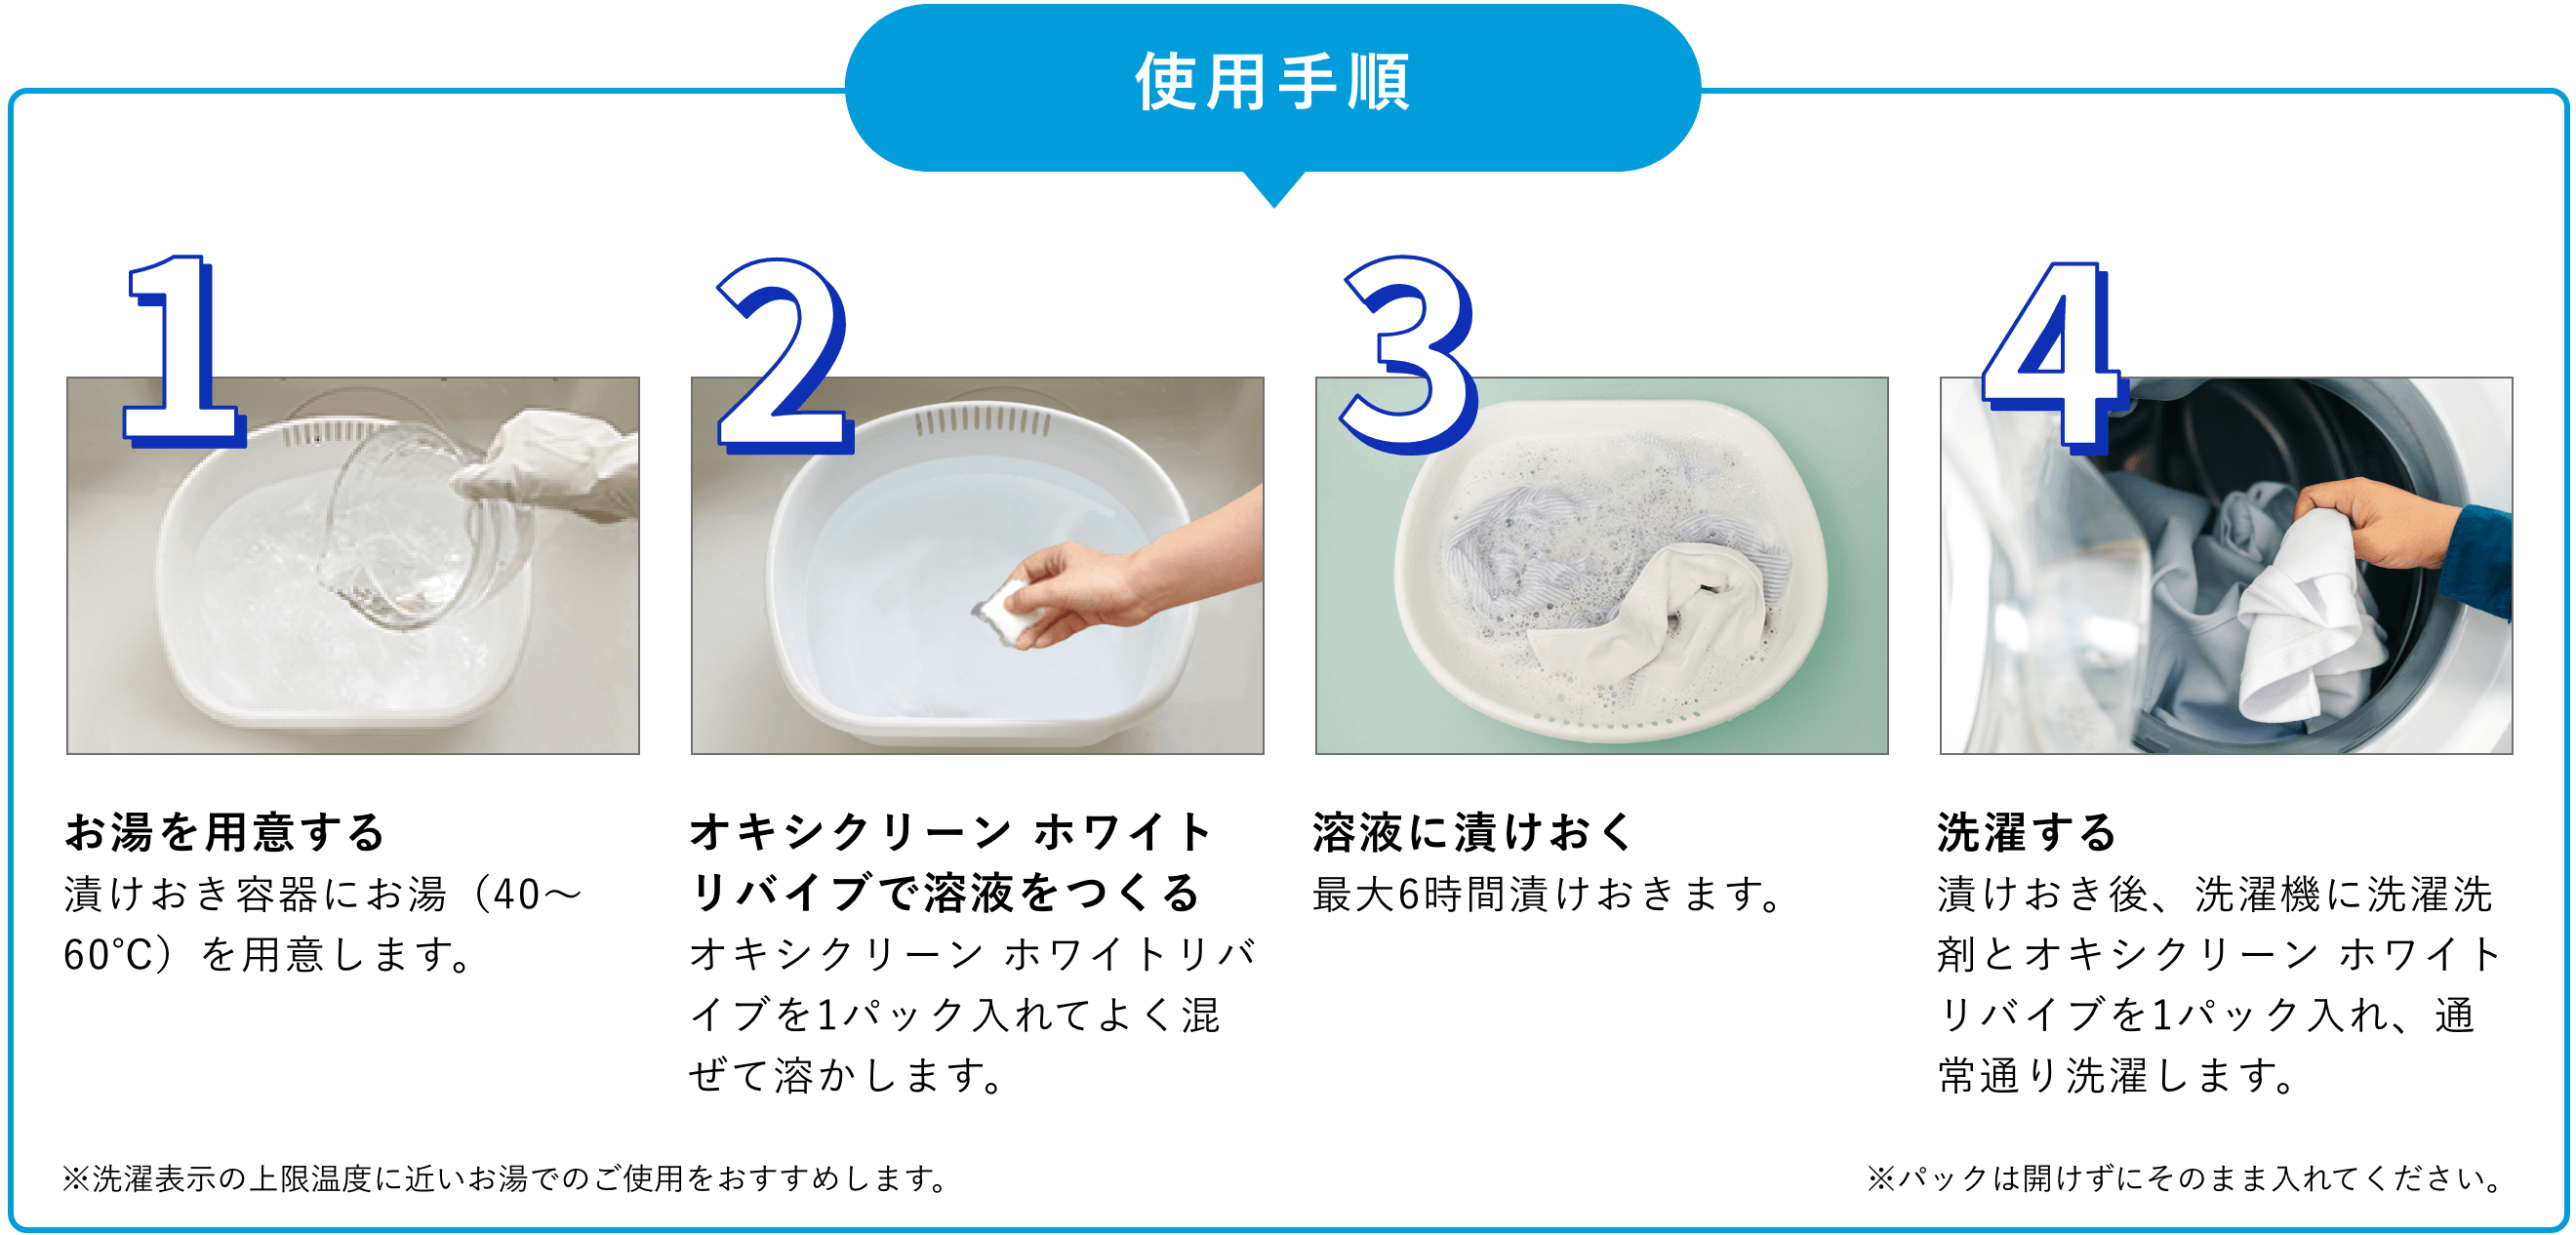 1.お湯を用意する。漬けおき容器にお湯（40～60℃）を用意します。2.オキシクリーン ホワイトリバイブで溶液をつくる。オキシクリーン ホワイトリバイブを1パック入れてよく混ぜて溶かします。3.溶液に漬けおく。最大6時間漬けおきます。4.洗濯する。漬けおき後、洗濯機に洗濯洗剤とオキシクリーン ホワイトリバイブを1パック入れ、通常通り洗濯します。※パックは開けずにそのまま入れてください。